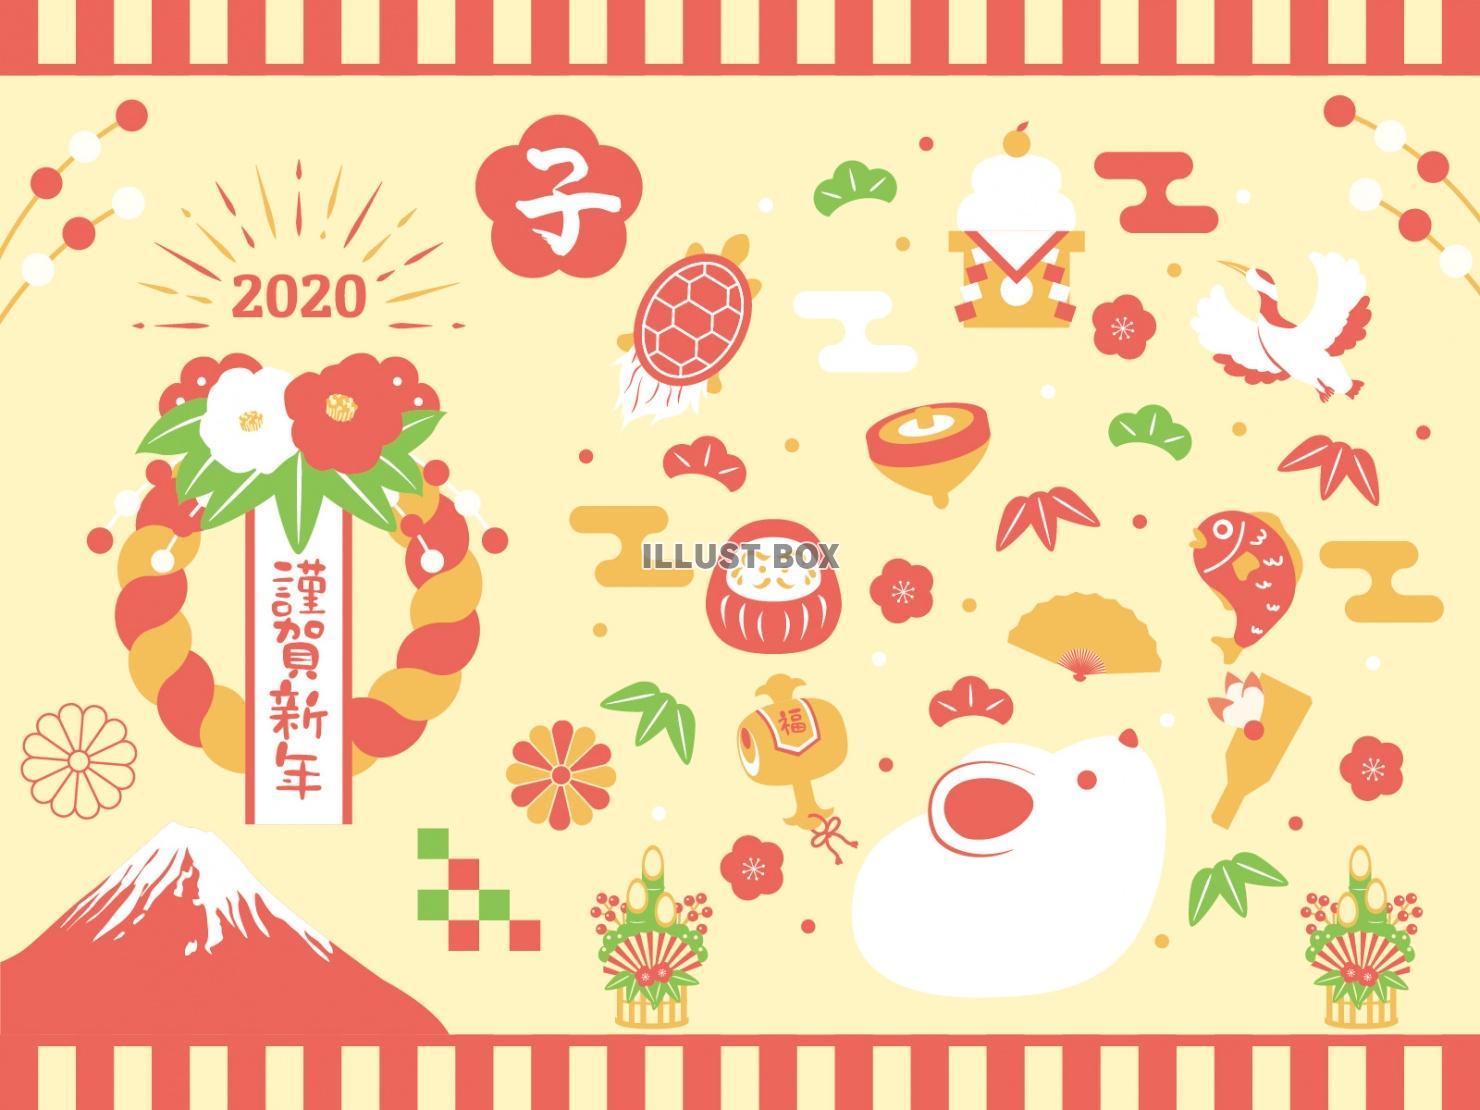 シンプル正月セット(干支飾り、ネズミ、鶴、亀、松竹梅、だるま...